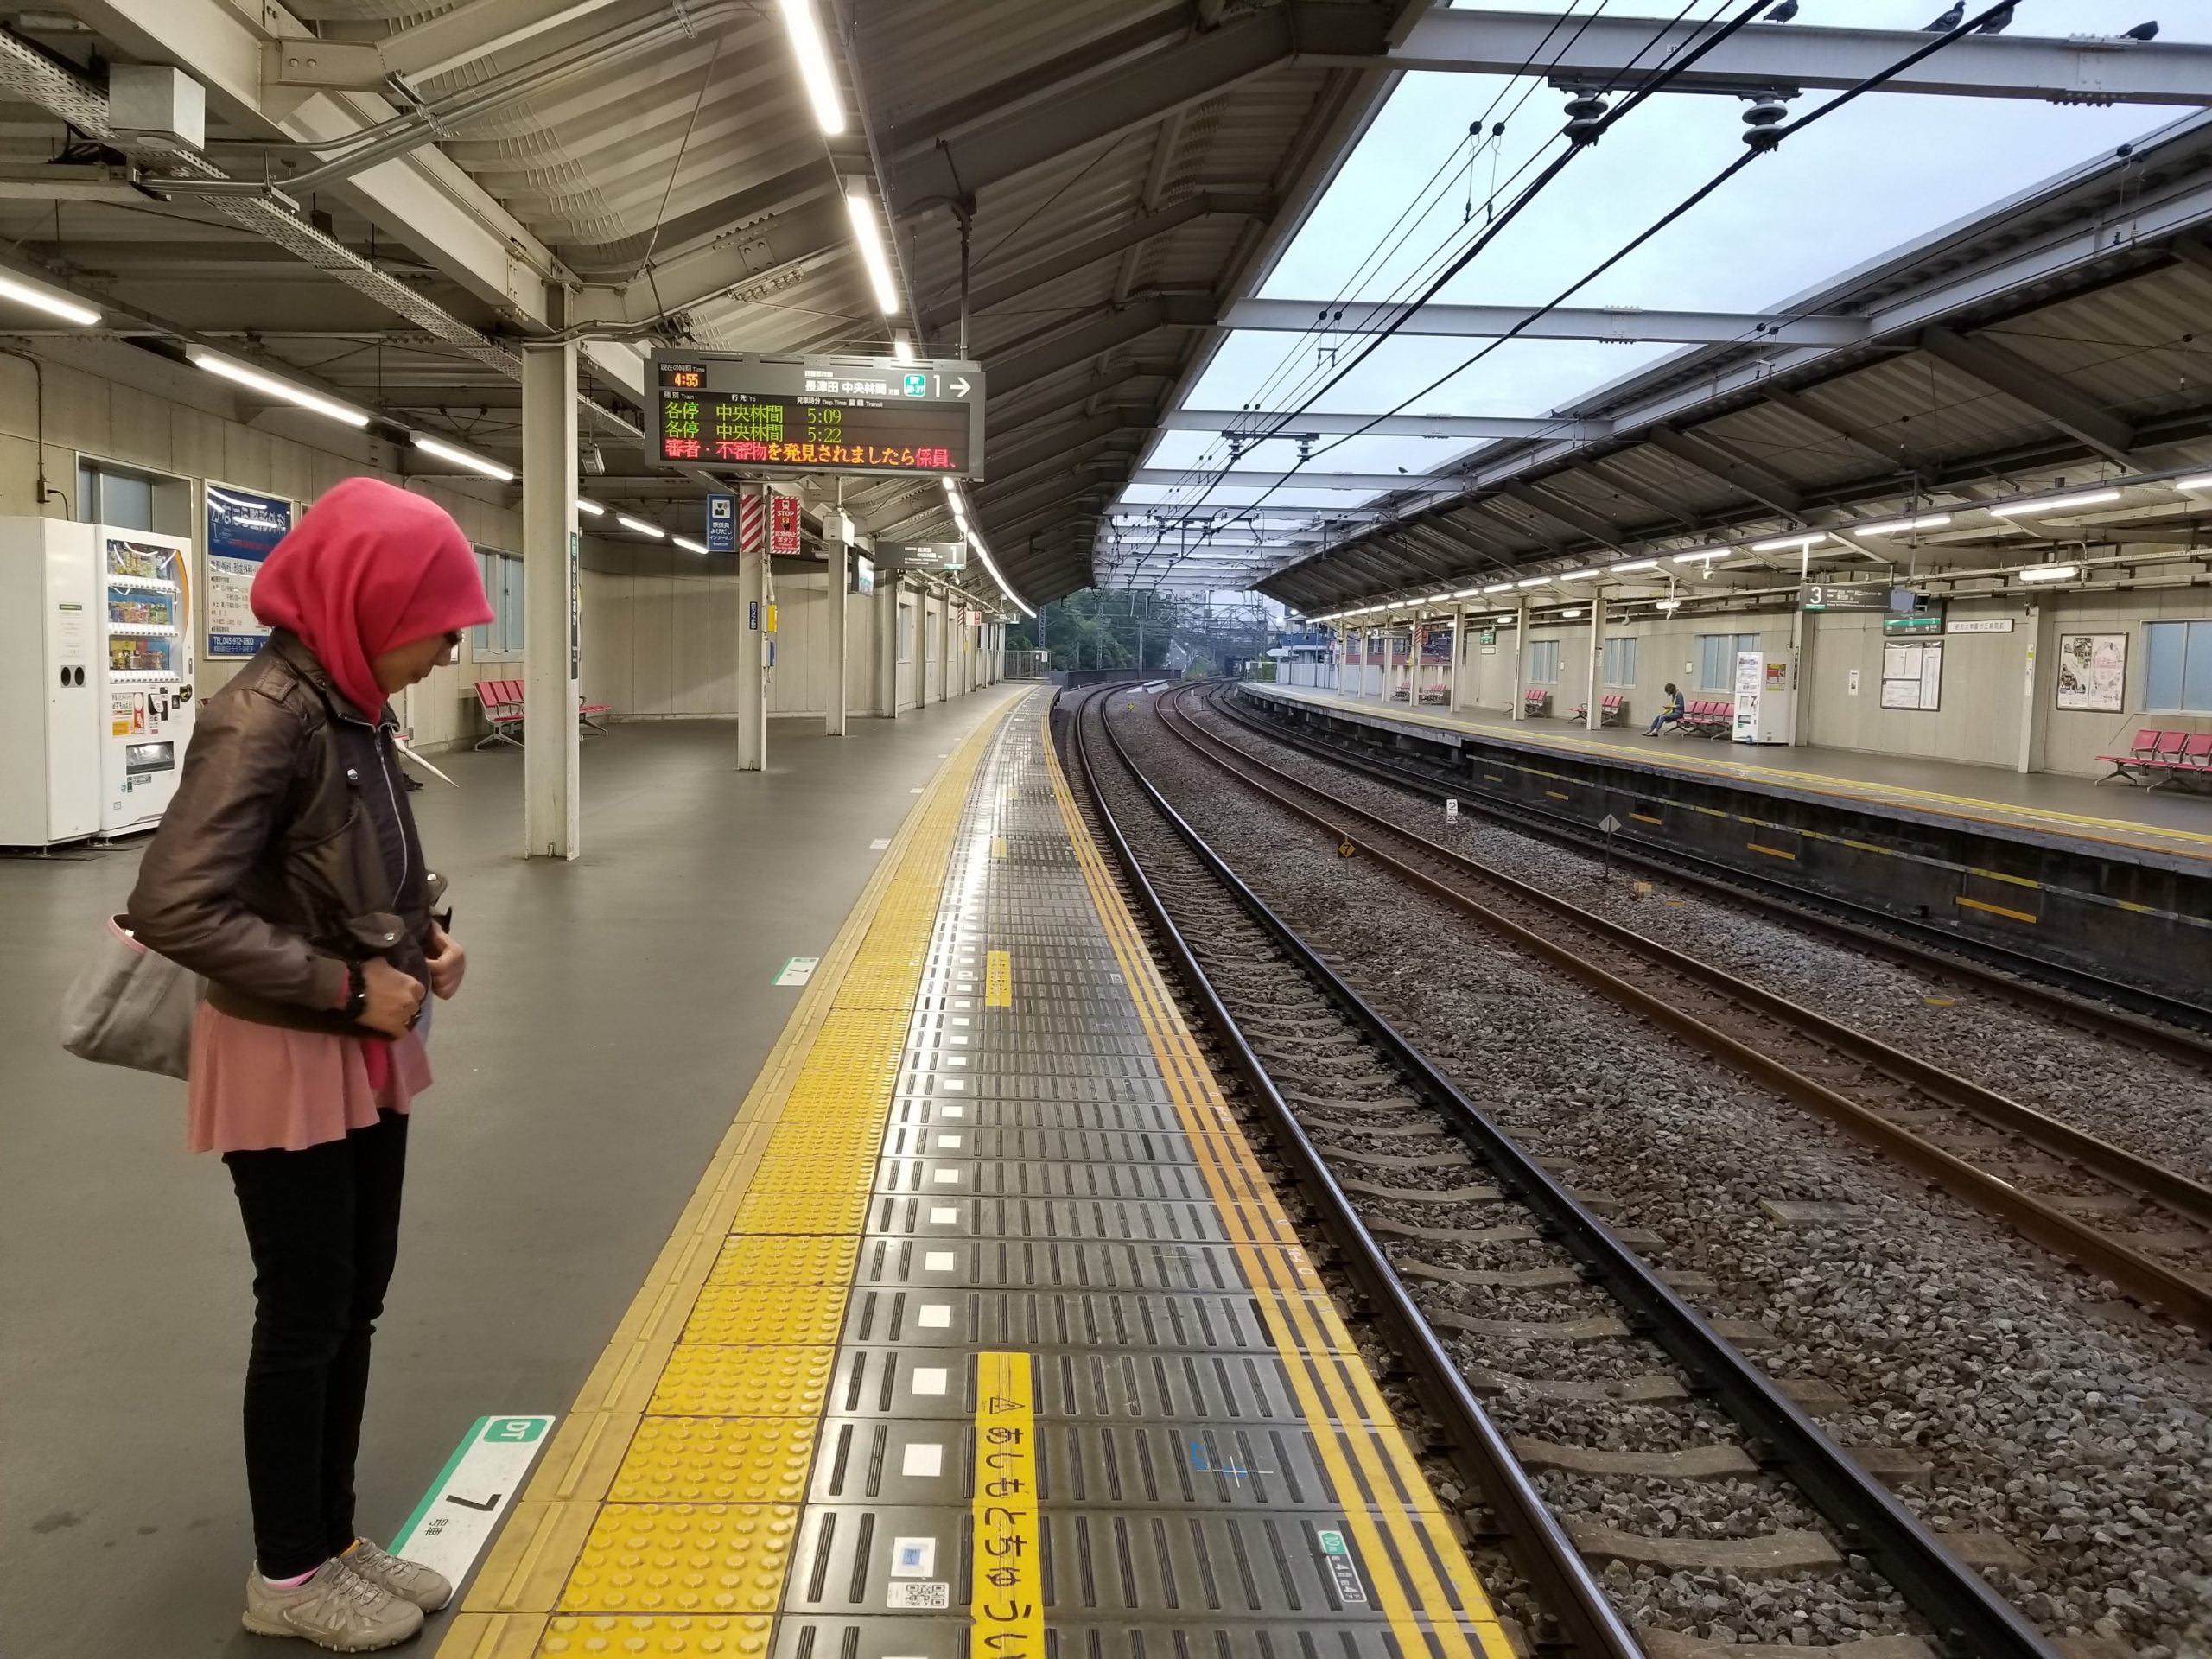 Transitting in Japan (part 2): Navigating around Tokyo